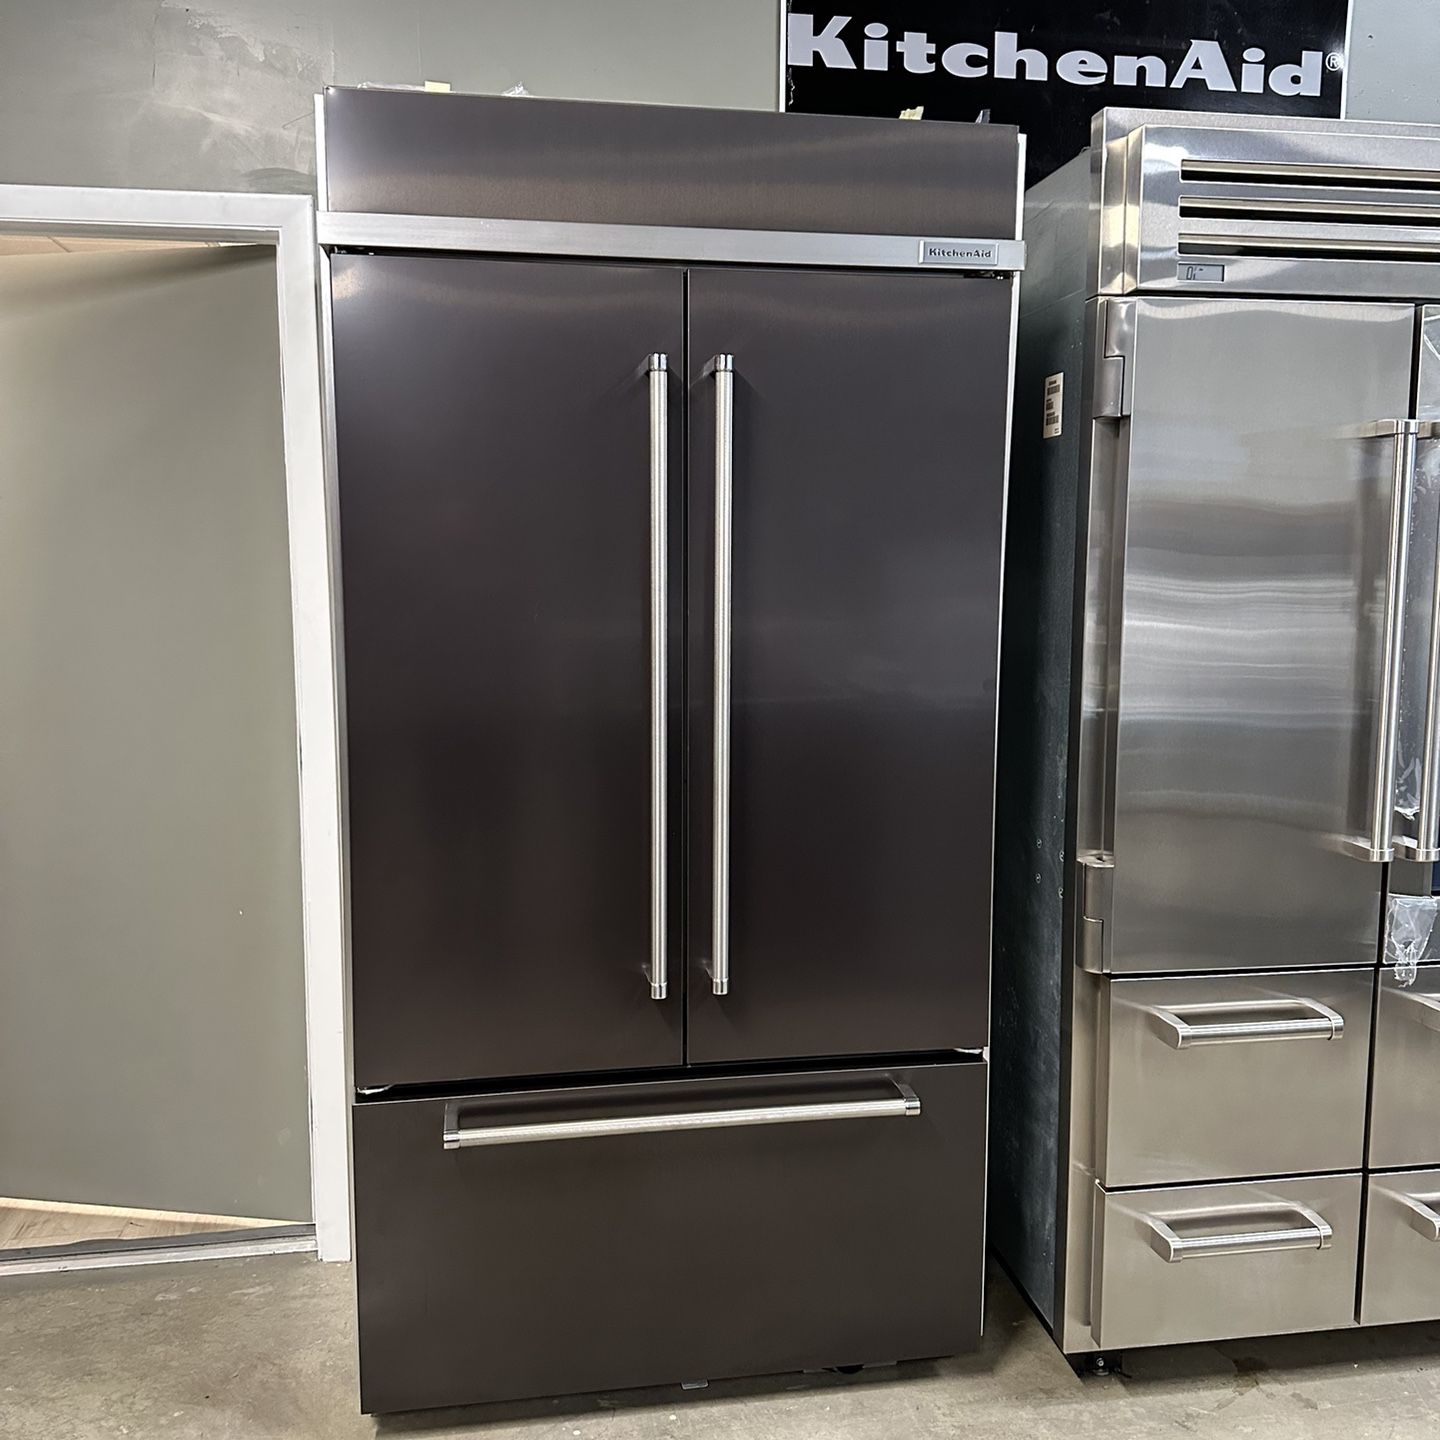 KITCHEN AID 42 inch built in refrigerator 